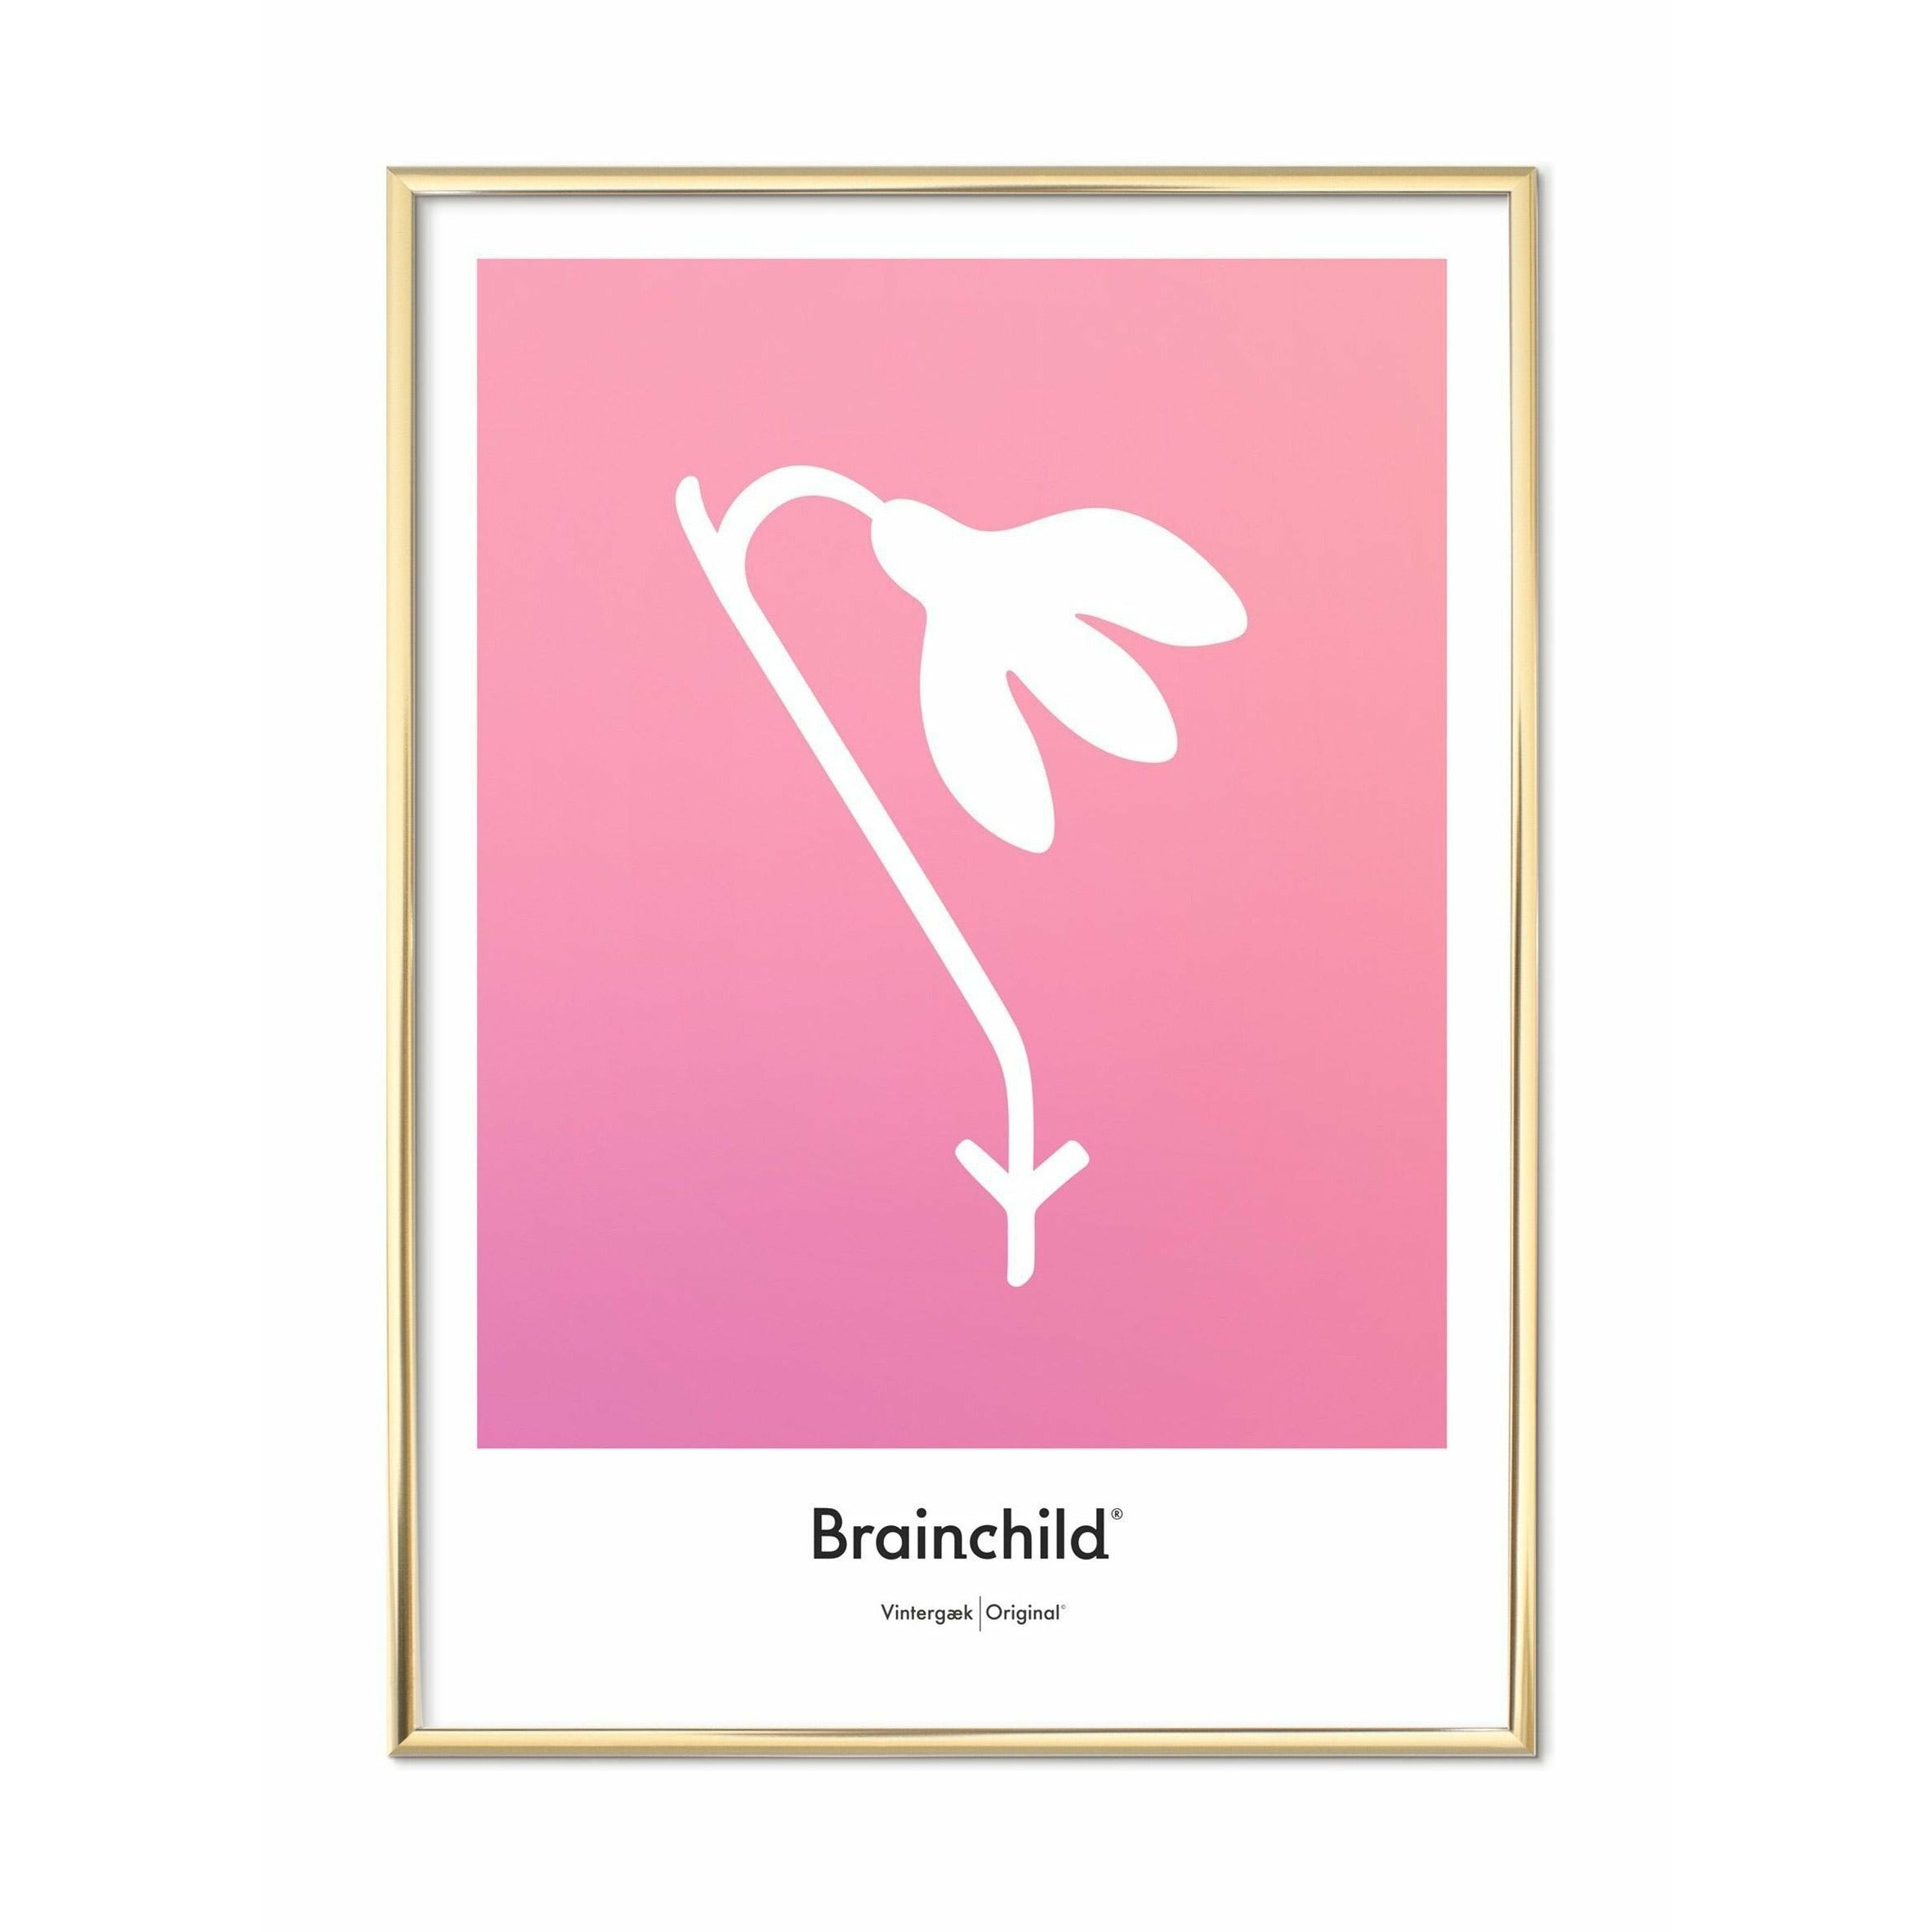 Brainchild Snowdropsontwerppictogram Poster, messing gekleurd frame 30 x40 cm, roze